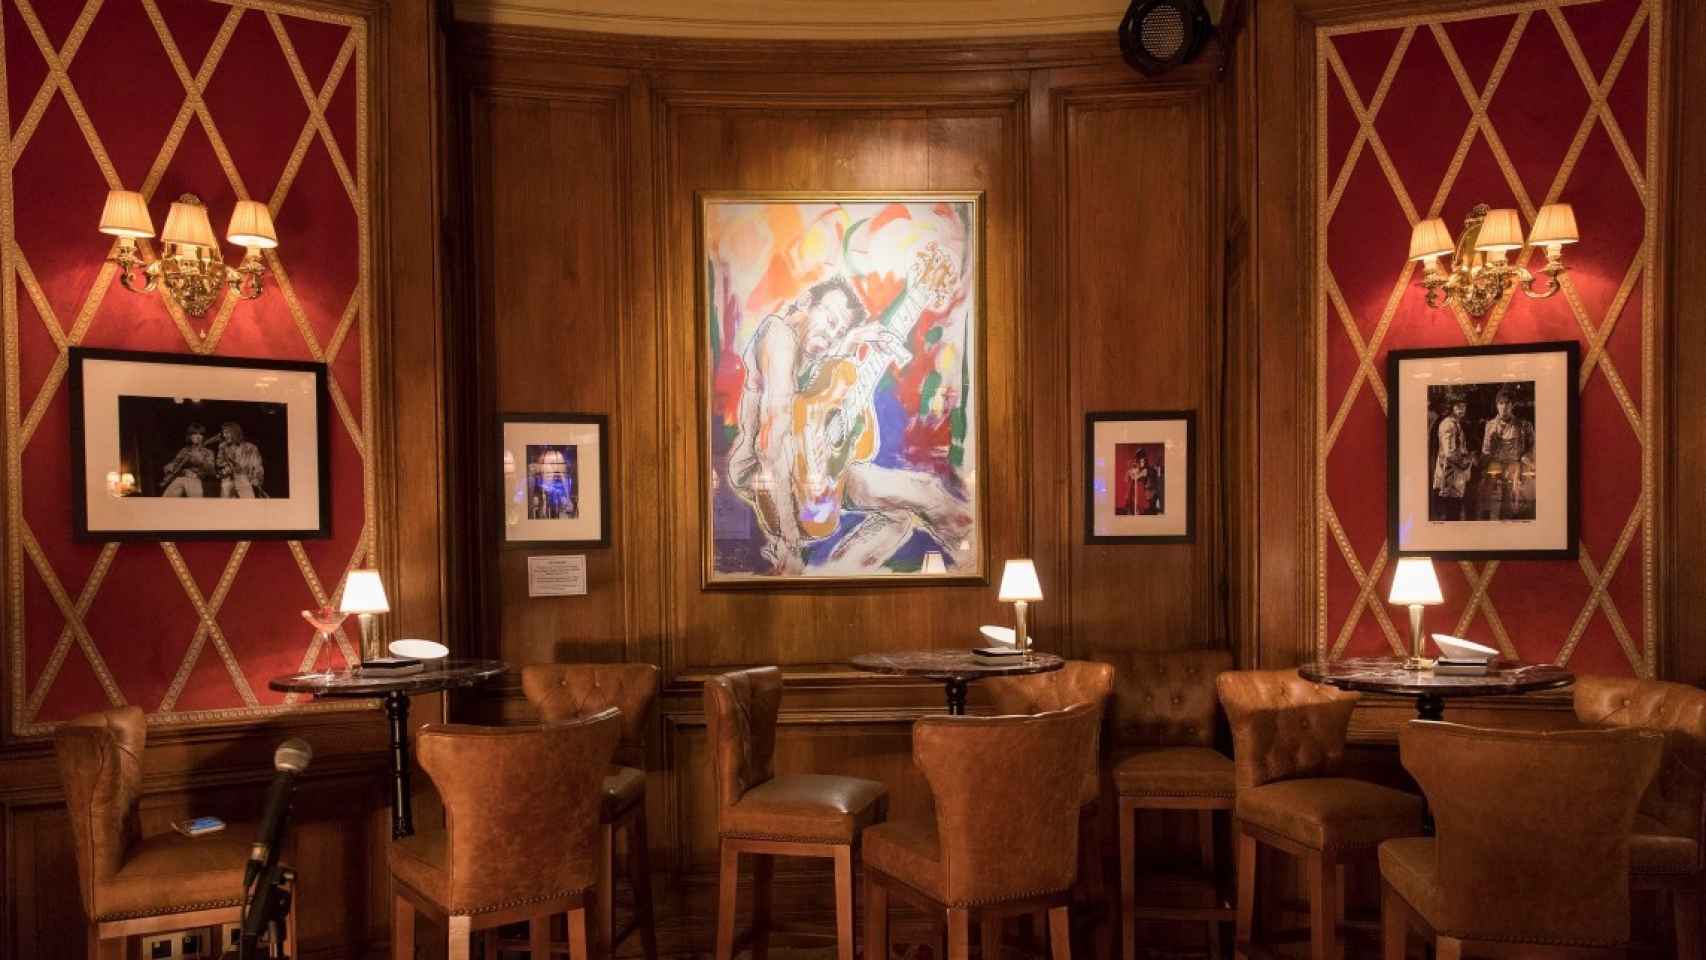 El Bluesman Cocktail Bar lo preside un cuadro pintado por Ronie Wood, de los Rolling Stones, cliente del local